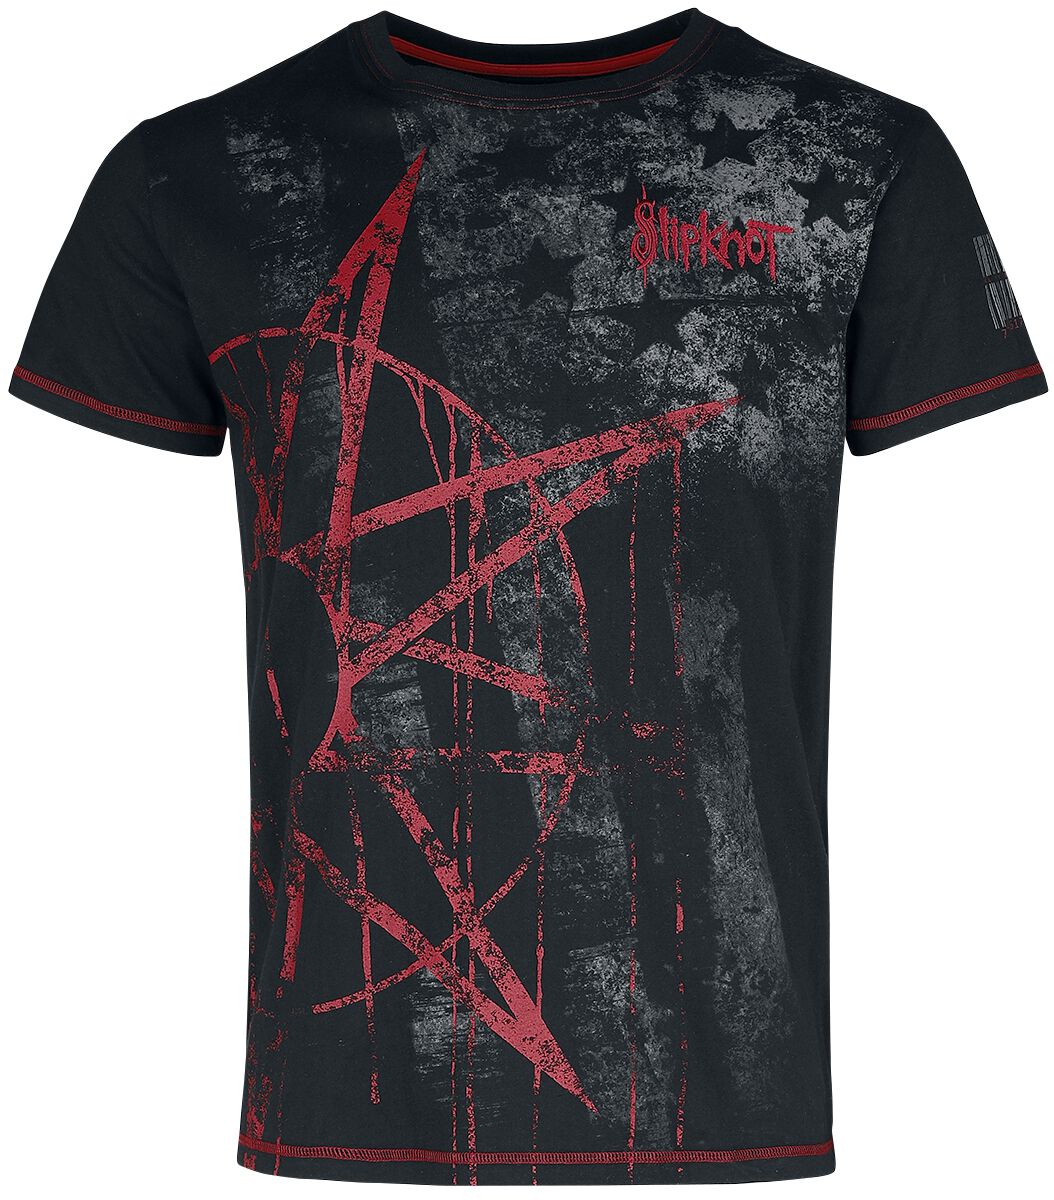 Slipknot T-Shirt - EMP Signature Collection - S bis 5XL - für Männer - Größe 5XL - schwarz  - EMP exklusives Merchandise!